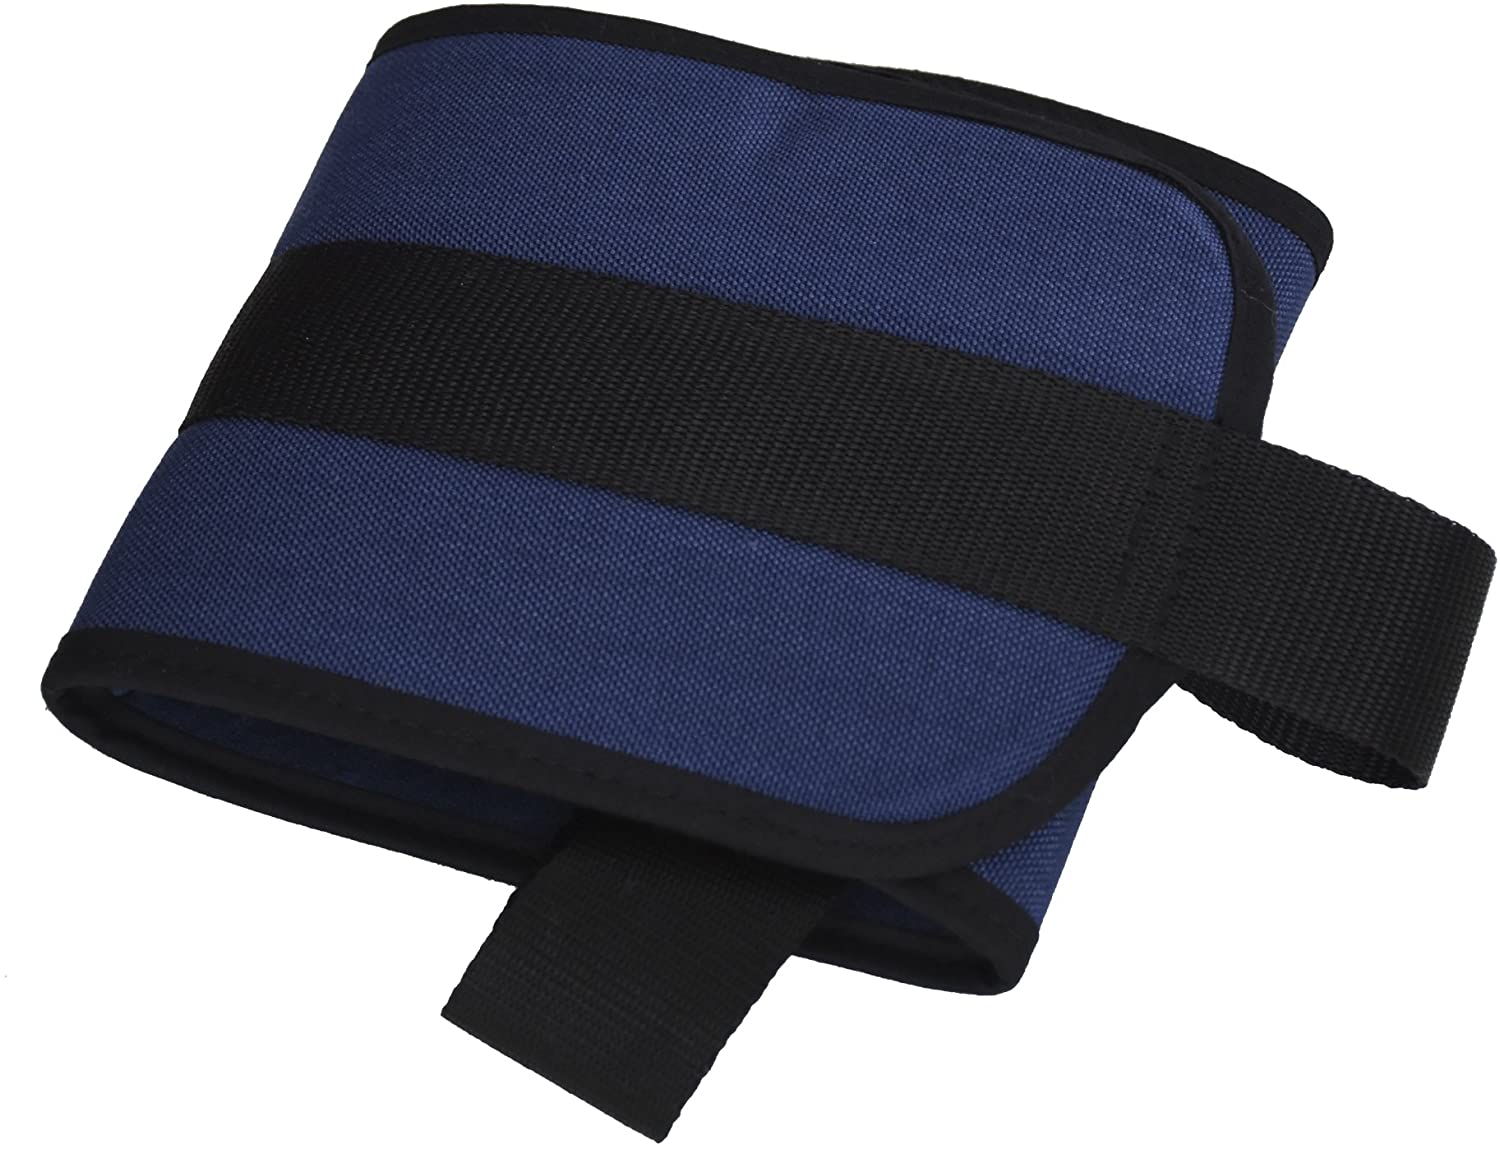  ORTONES | Cinturón de sujeción abdominal para silla de ruedas Talla Unica. 